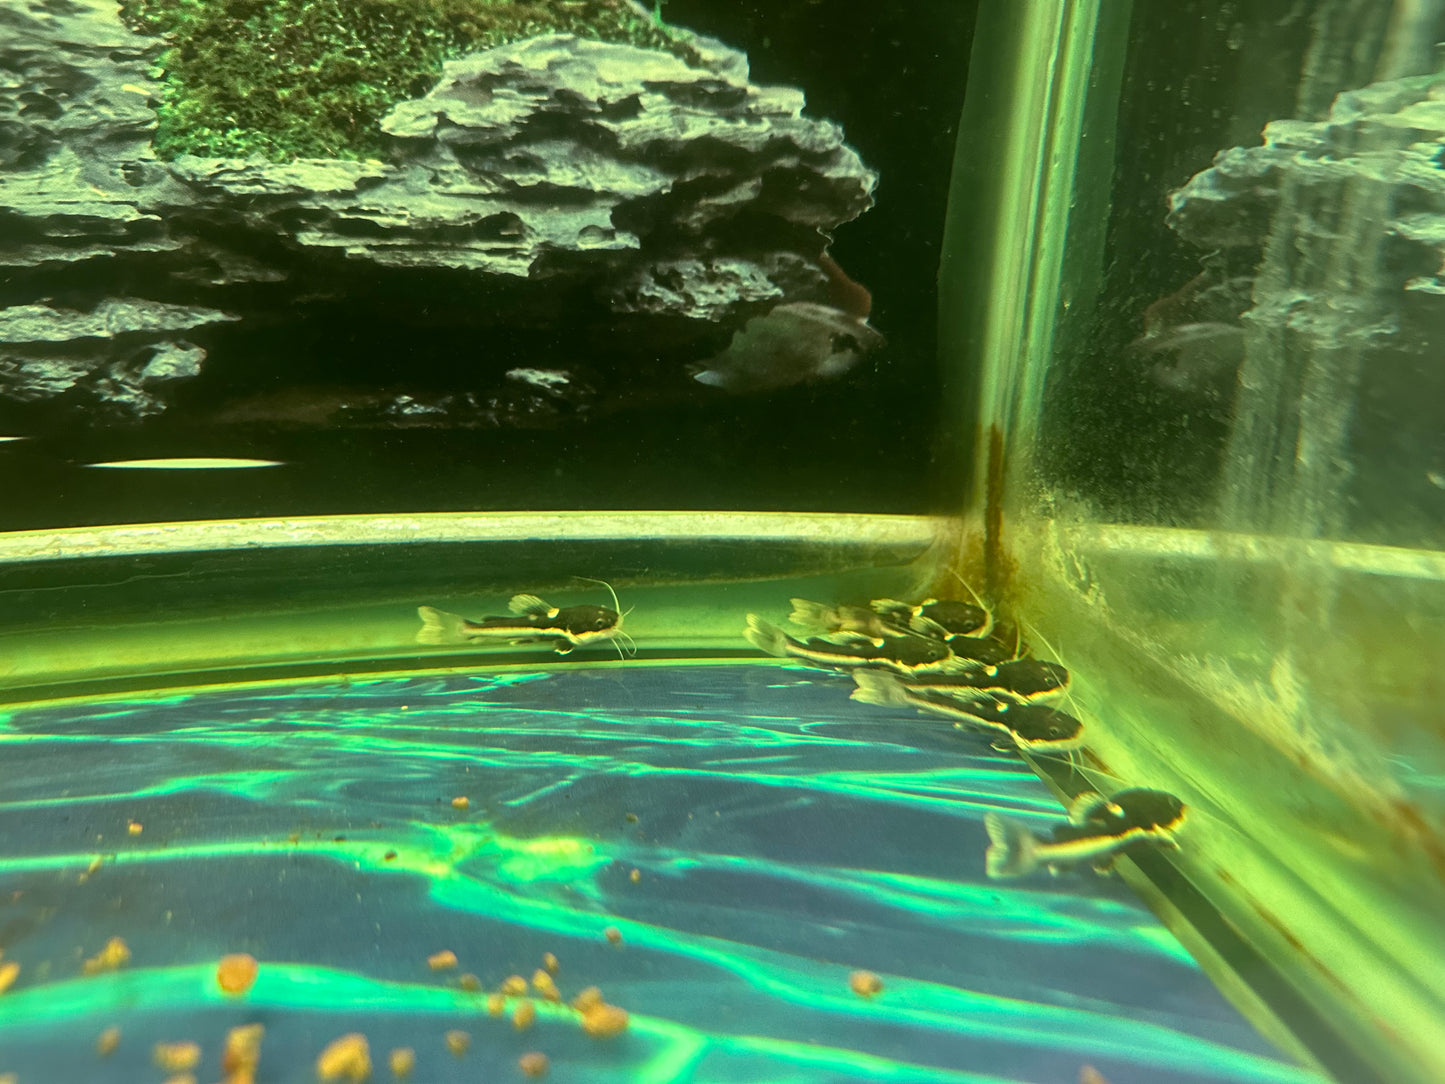 Redtail catfish rtc 1.75-2”